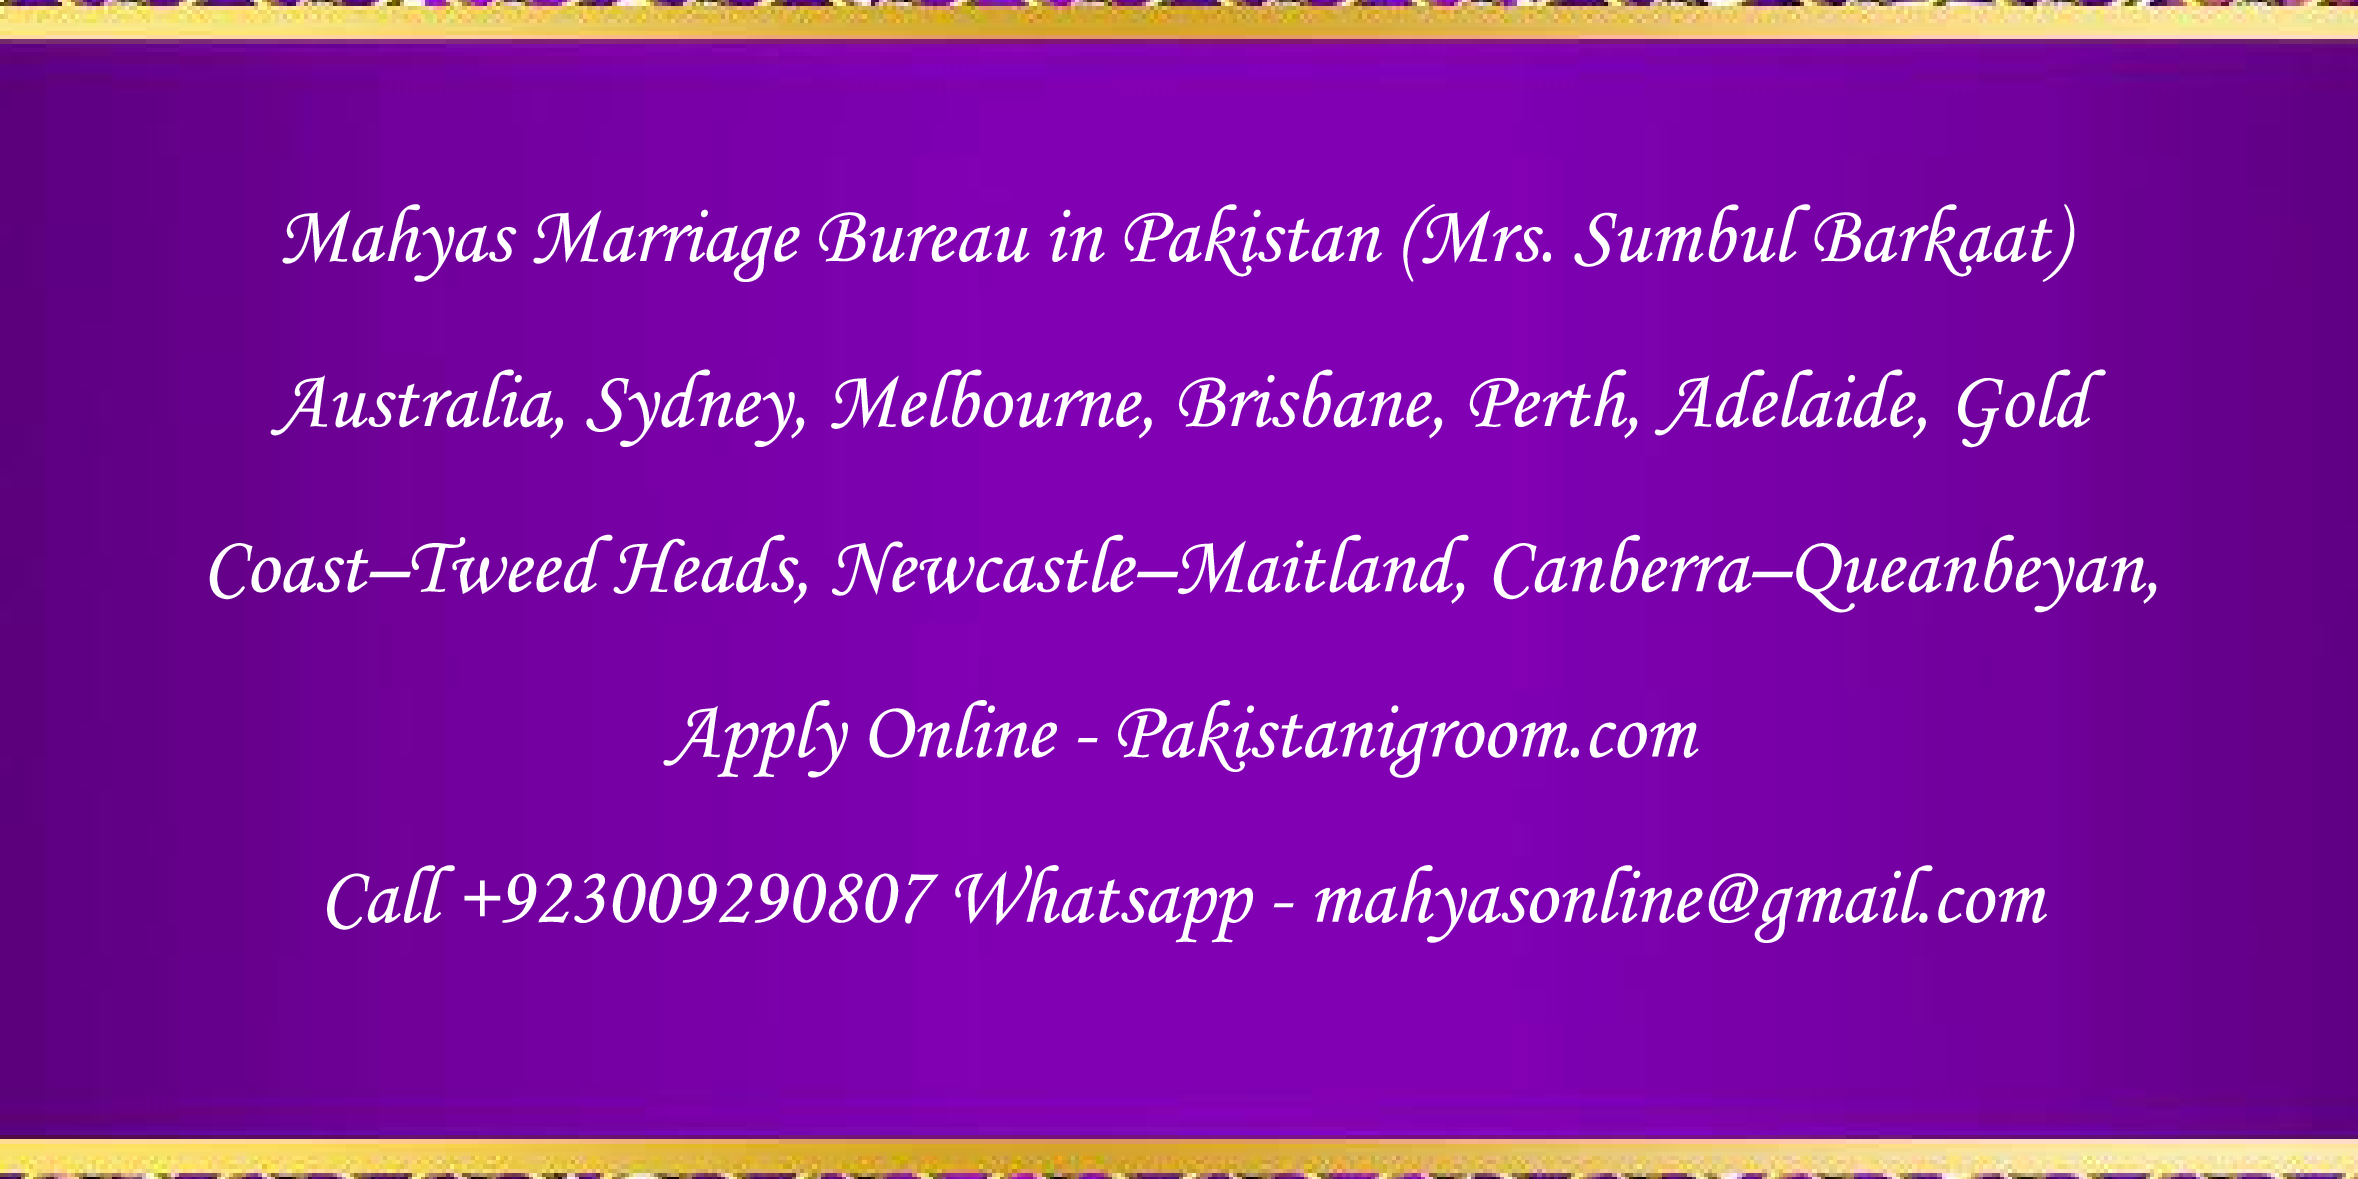 Mahyas-marriage-bureau-Karachi-Pakistan-for-Shia-Sunni-Remarriage-Divorce-Widow-Second-marriage-Punjabi-Pashto-Urdu-26.png